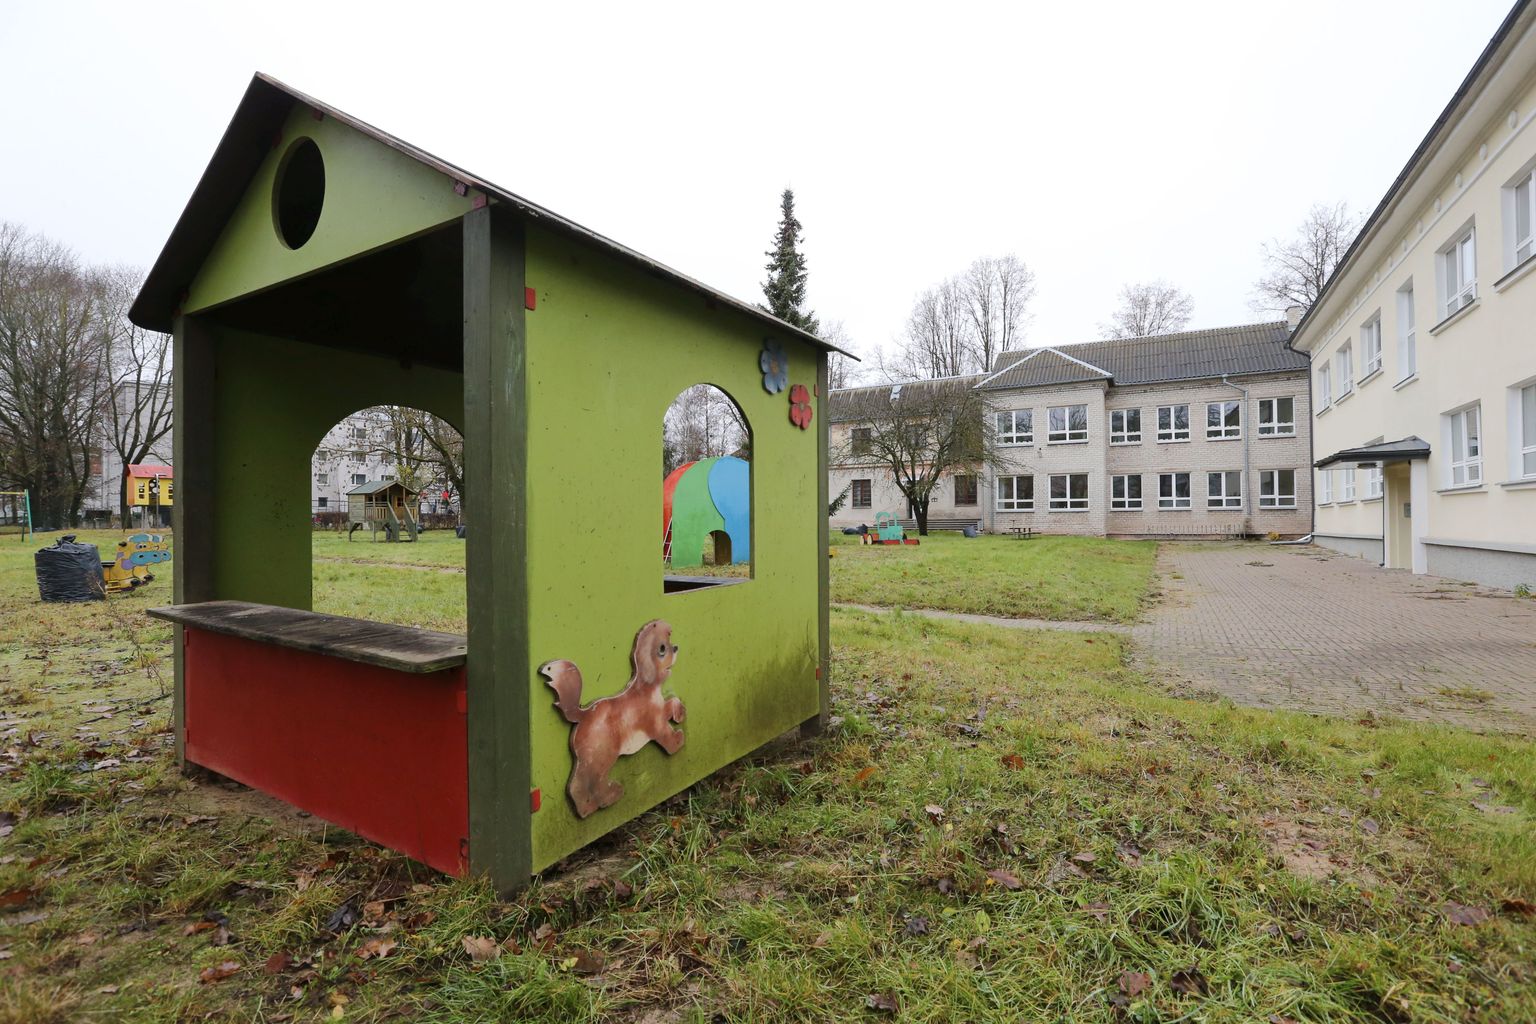 Eesti suuruselt teine linn pole suutnud Kesklinna lastekeskuse lasteaaeda kahe aastaga ära remontida. Samal ajal on ära lammutatud ja nullist üles ehitatud pirakas kaubanduskeskus.